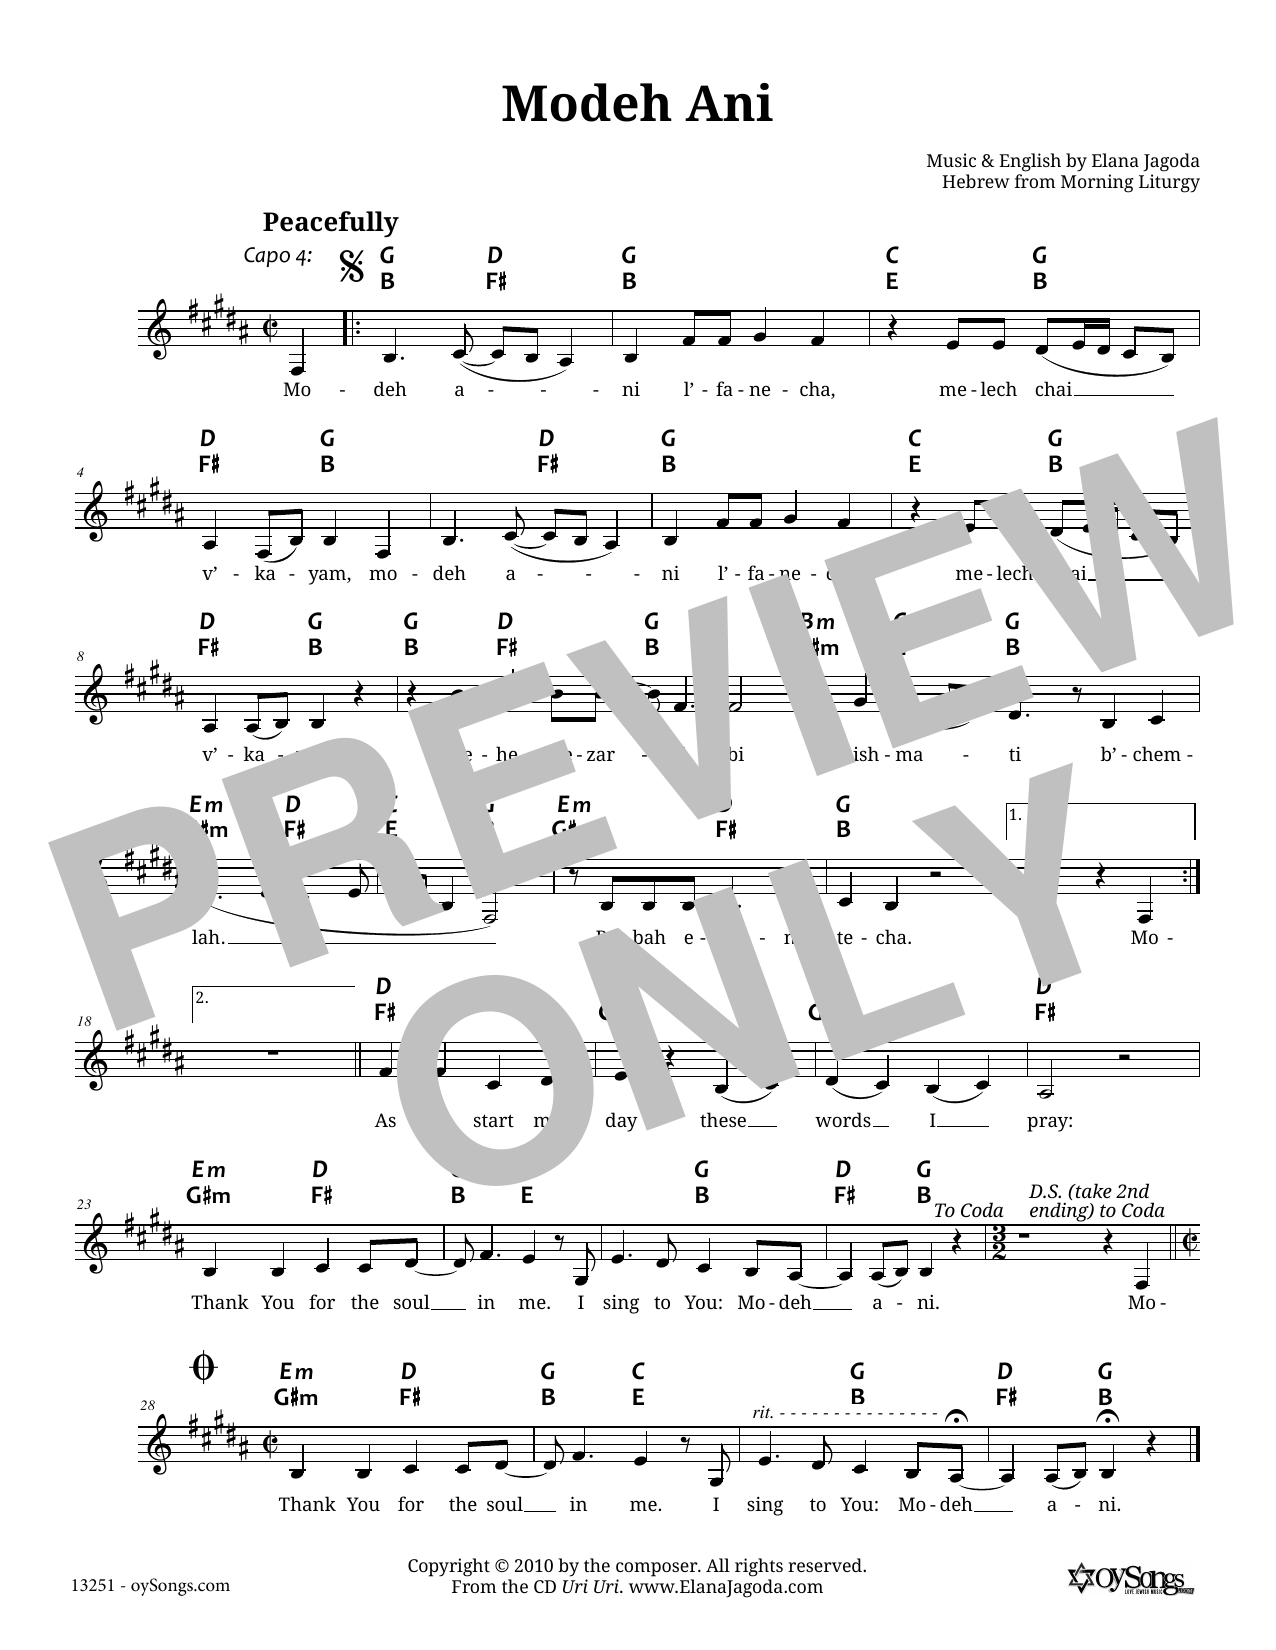 Elana Jagoda Modeh Ani Sheet Music Notes & Chords for Melody Line, Lyrics & Chords - Download or Print PDF